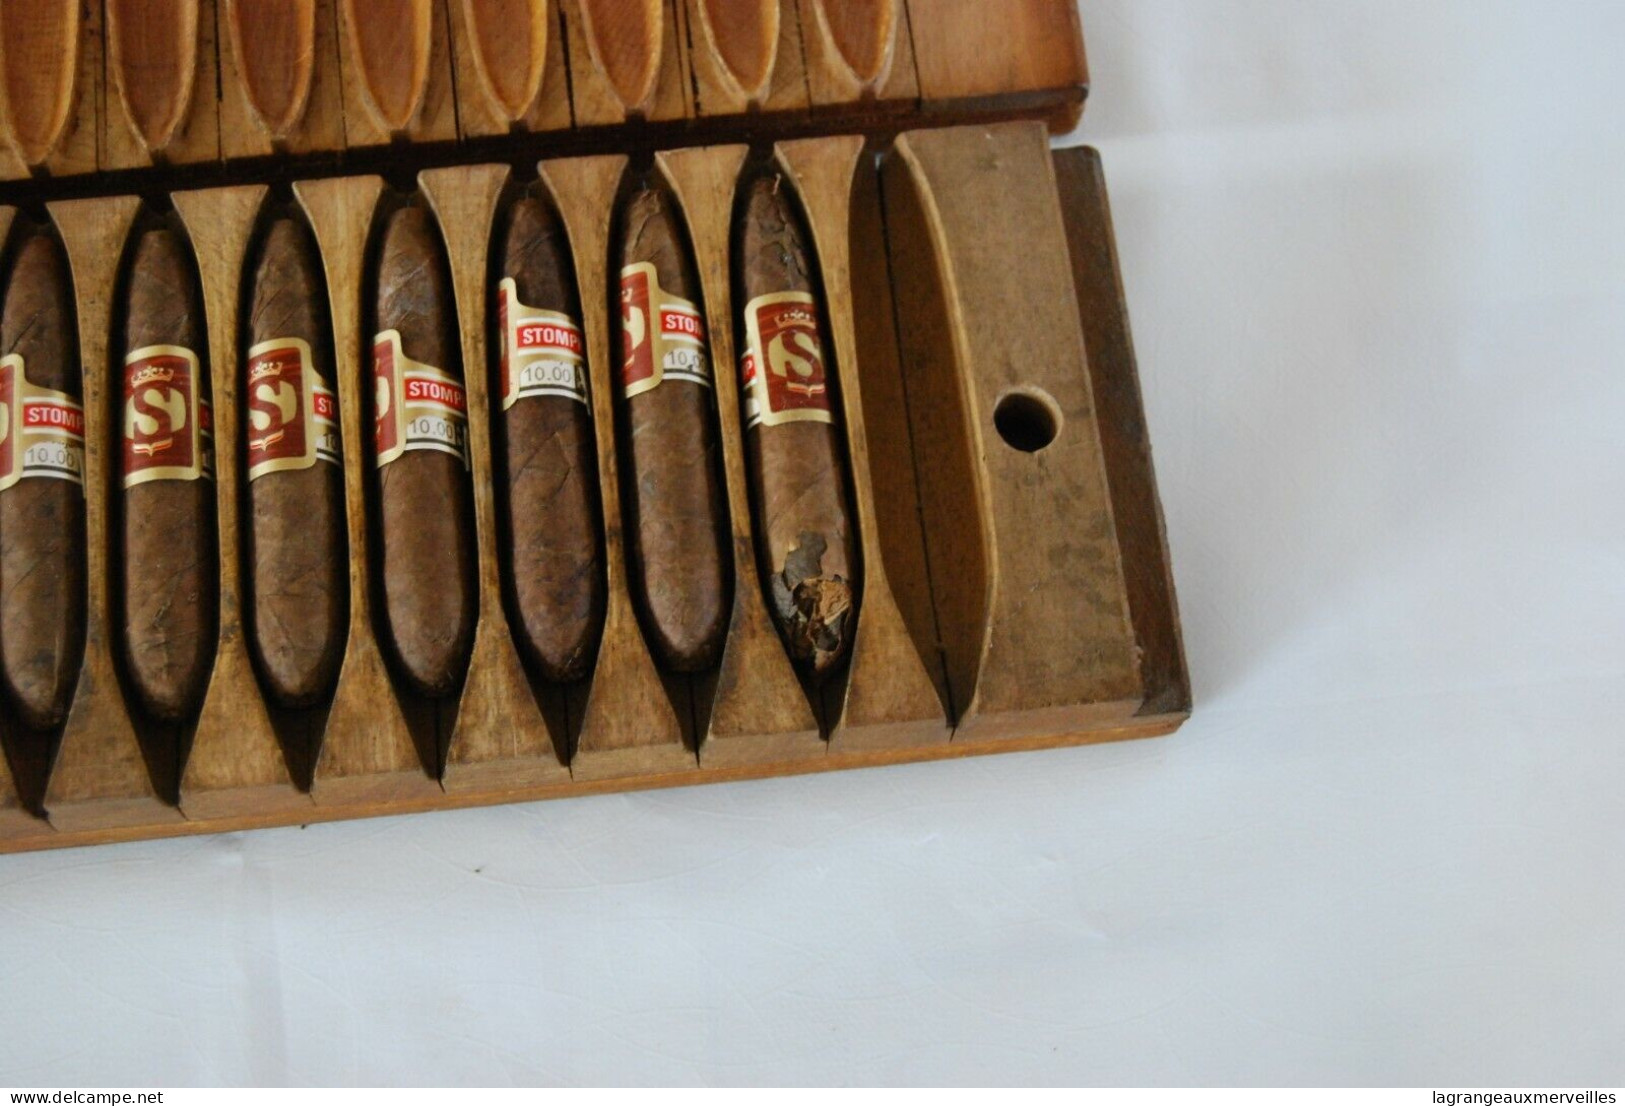 E1 Ancienne presse à cigares avec 14 cigares